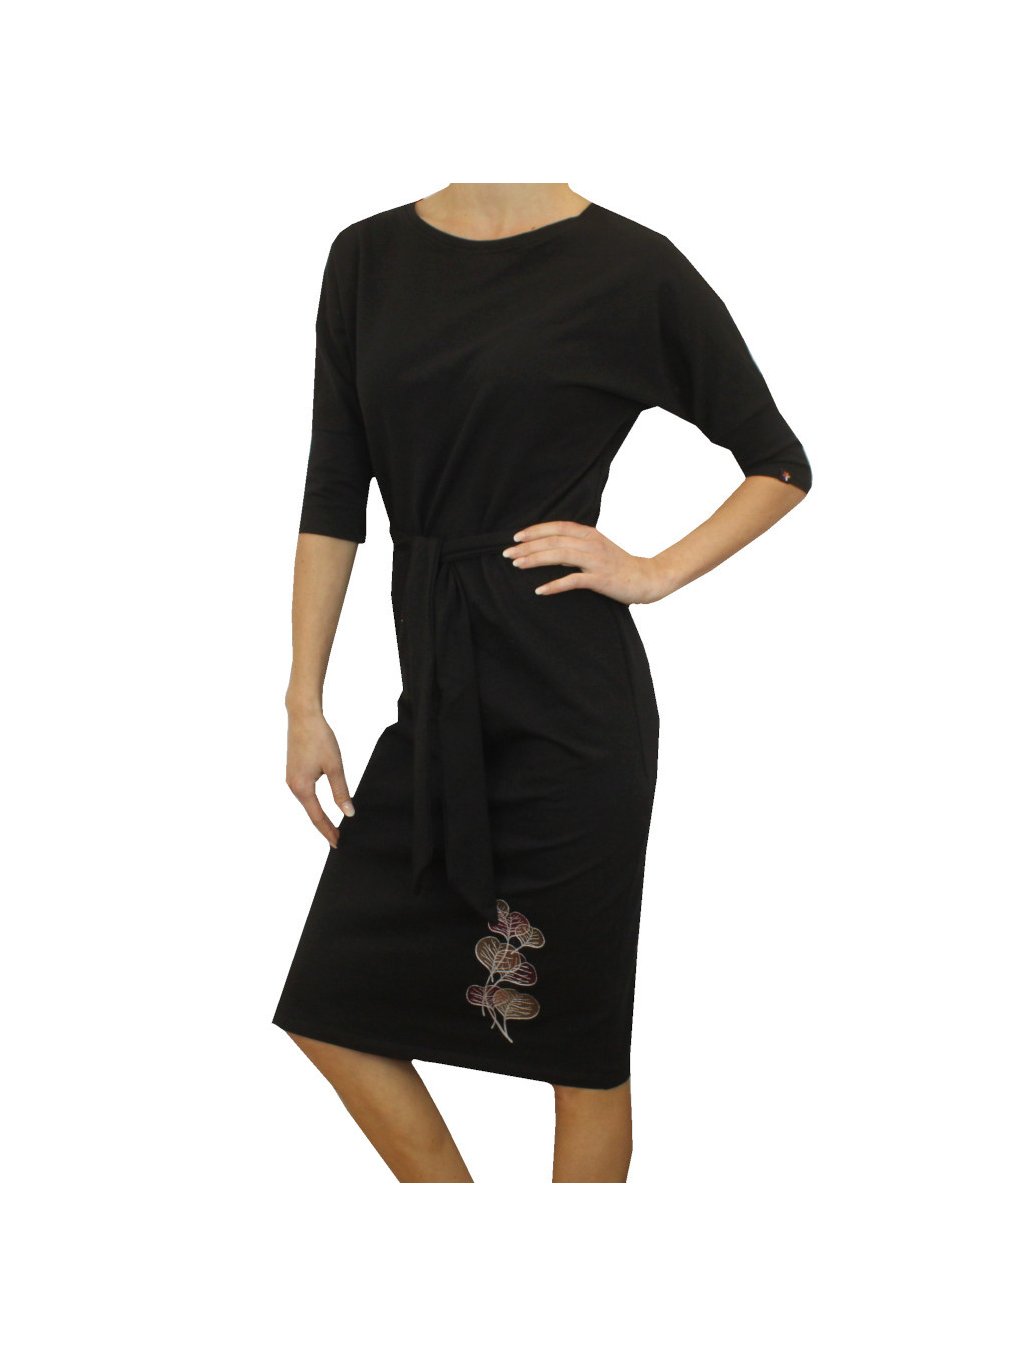 Černé dámské šaty MEDA, volnější střih, pásek, listy